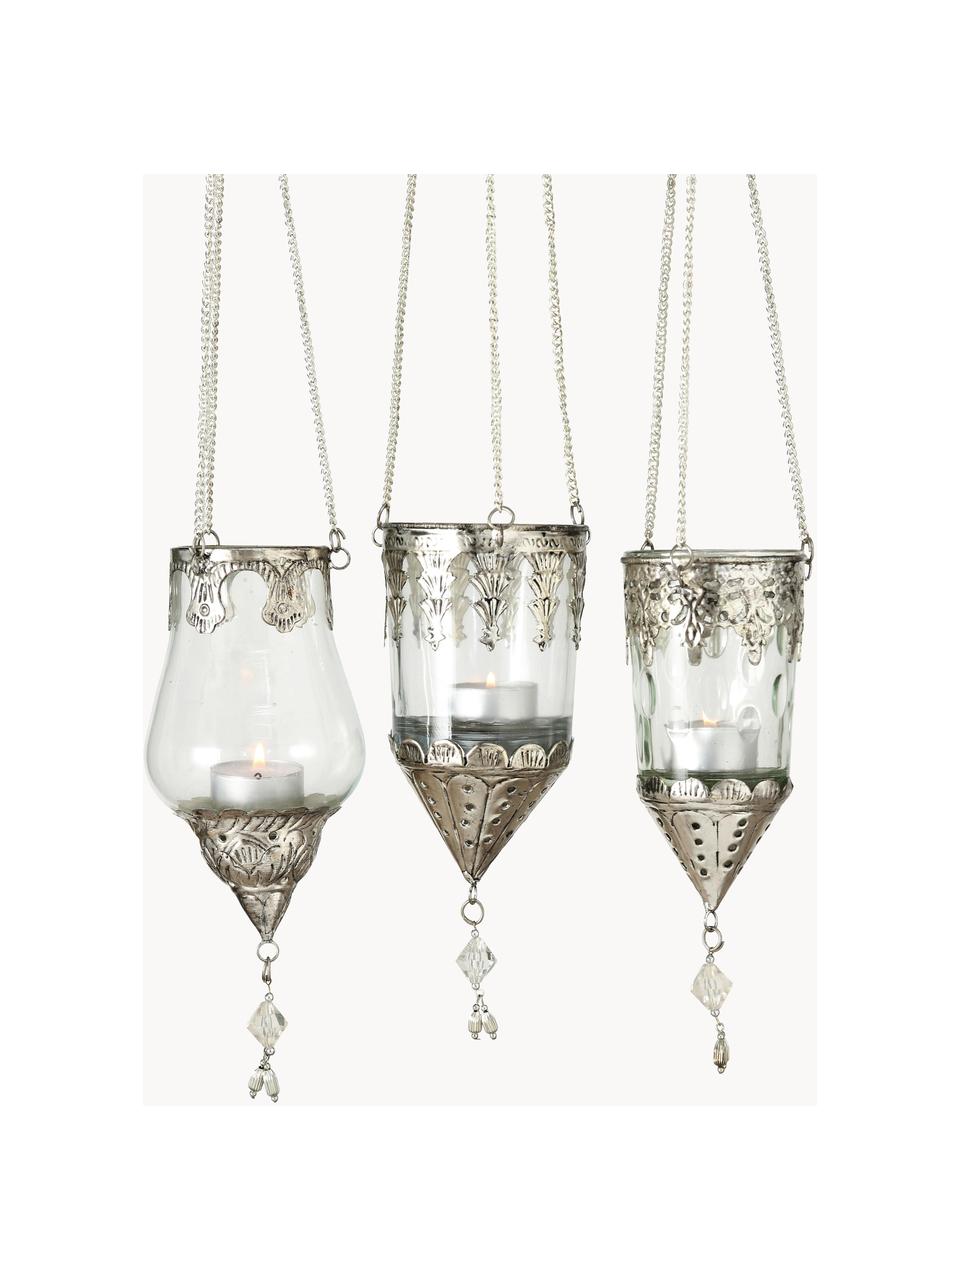 Windlichter-Set Cosa aus Glas, 3er-Set, Windlicht: Glas, Dekor: Metall, Transparent, Silberfarben, Ø 9 x H 23 cm